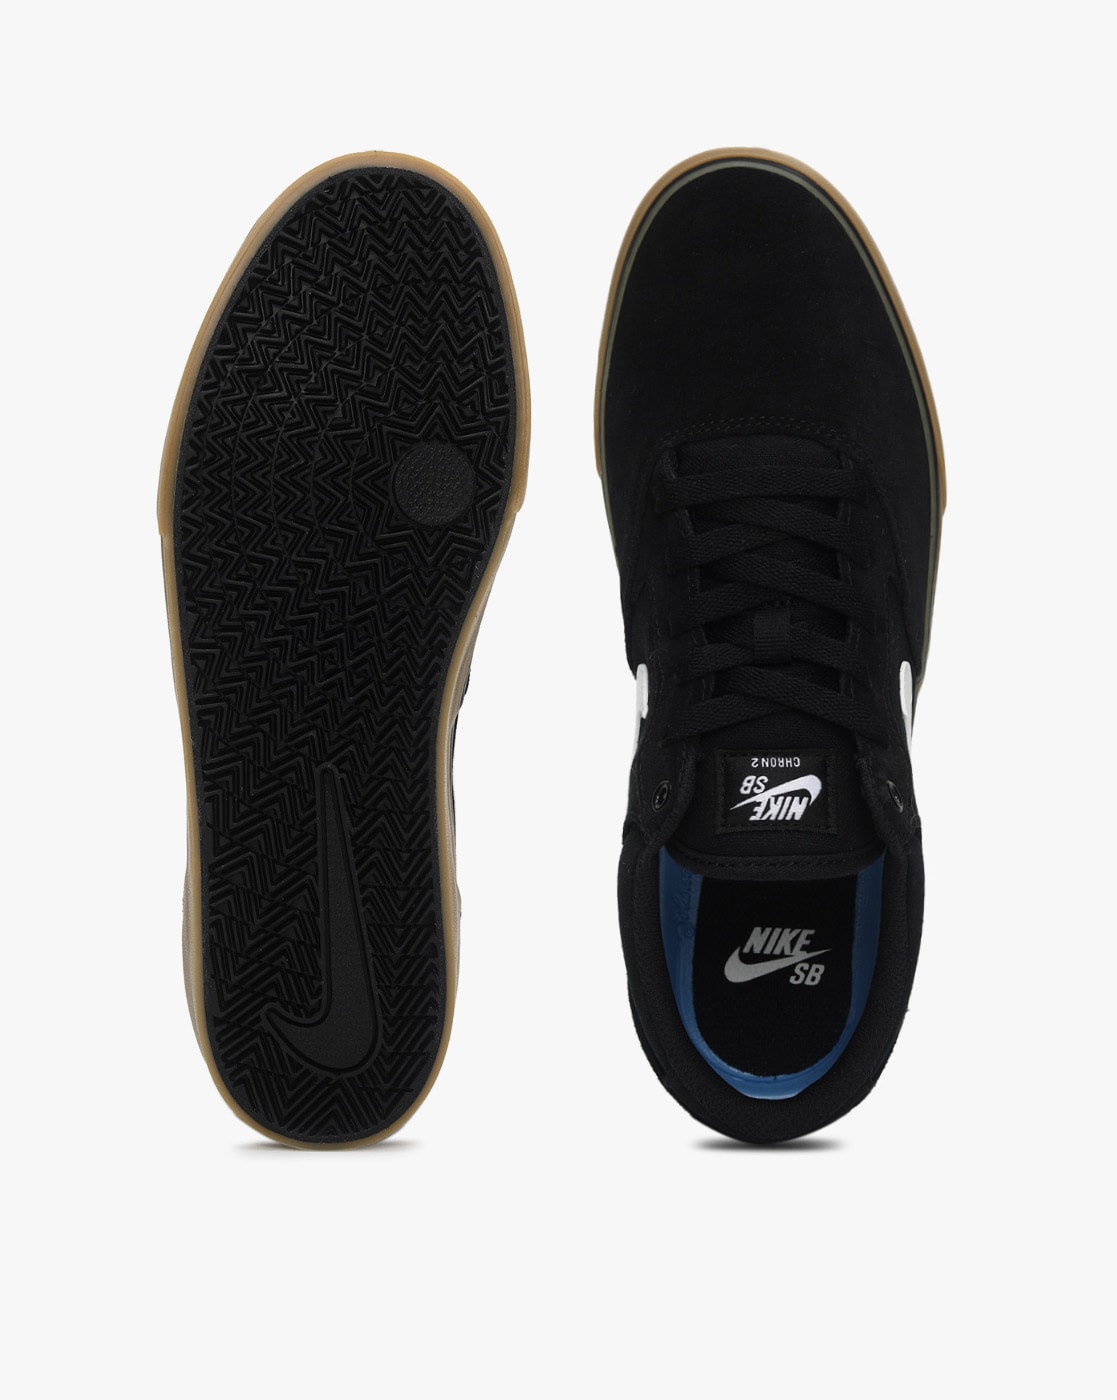 Zapatillas Skate Nike Sb Chron 2 Negro-Gum